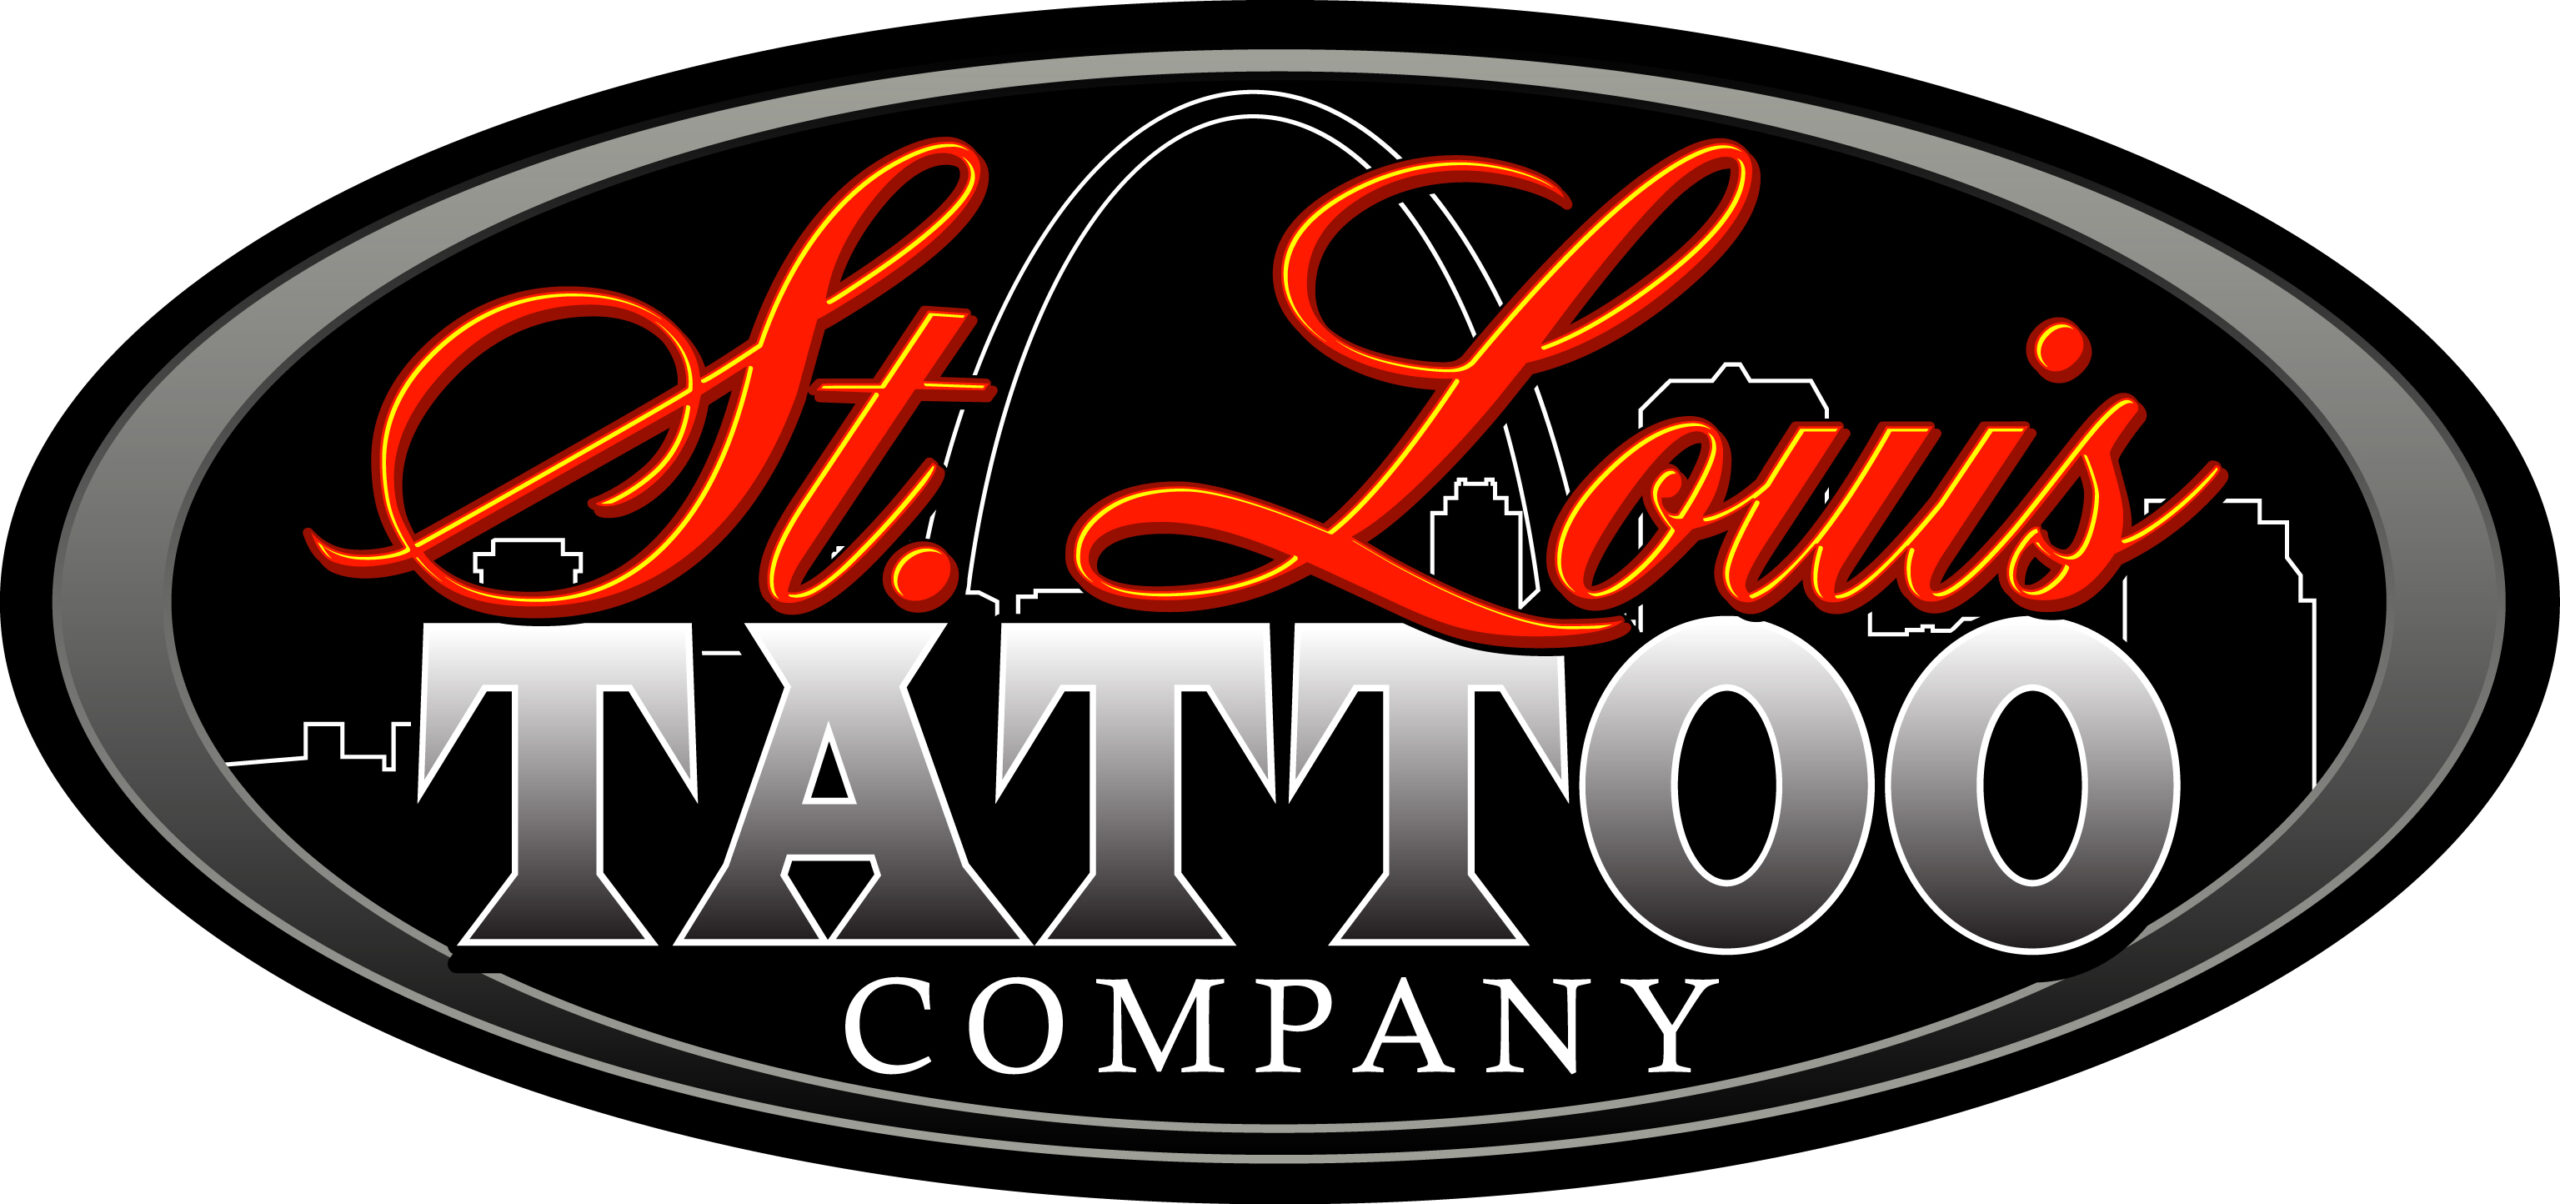 STL Tattoo Co Logo New Hi Res